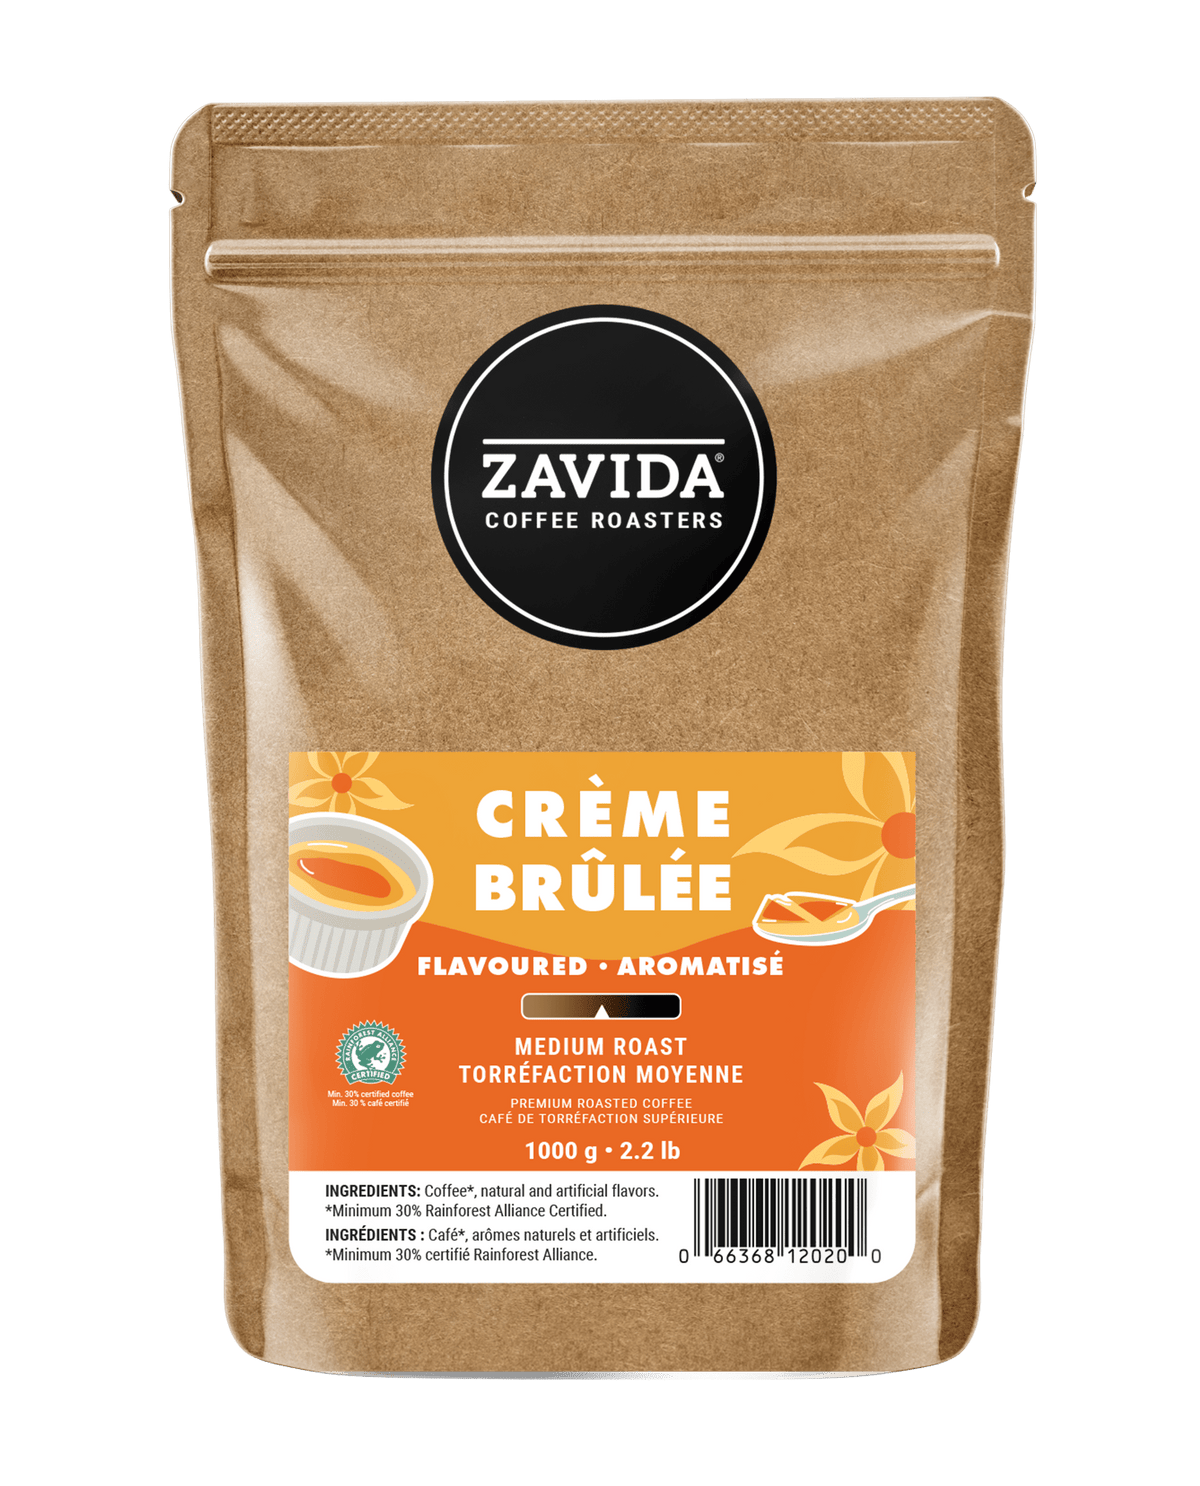 LIMITED EDITION Crème Brûlée Coffee - 1 kg - Zavida Coffee